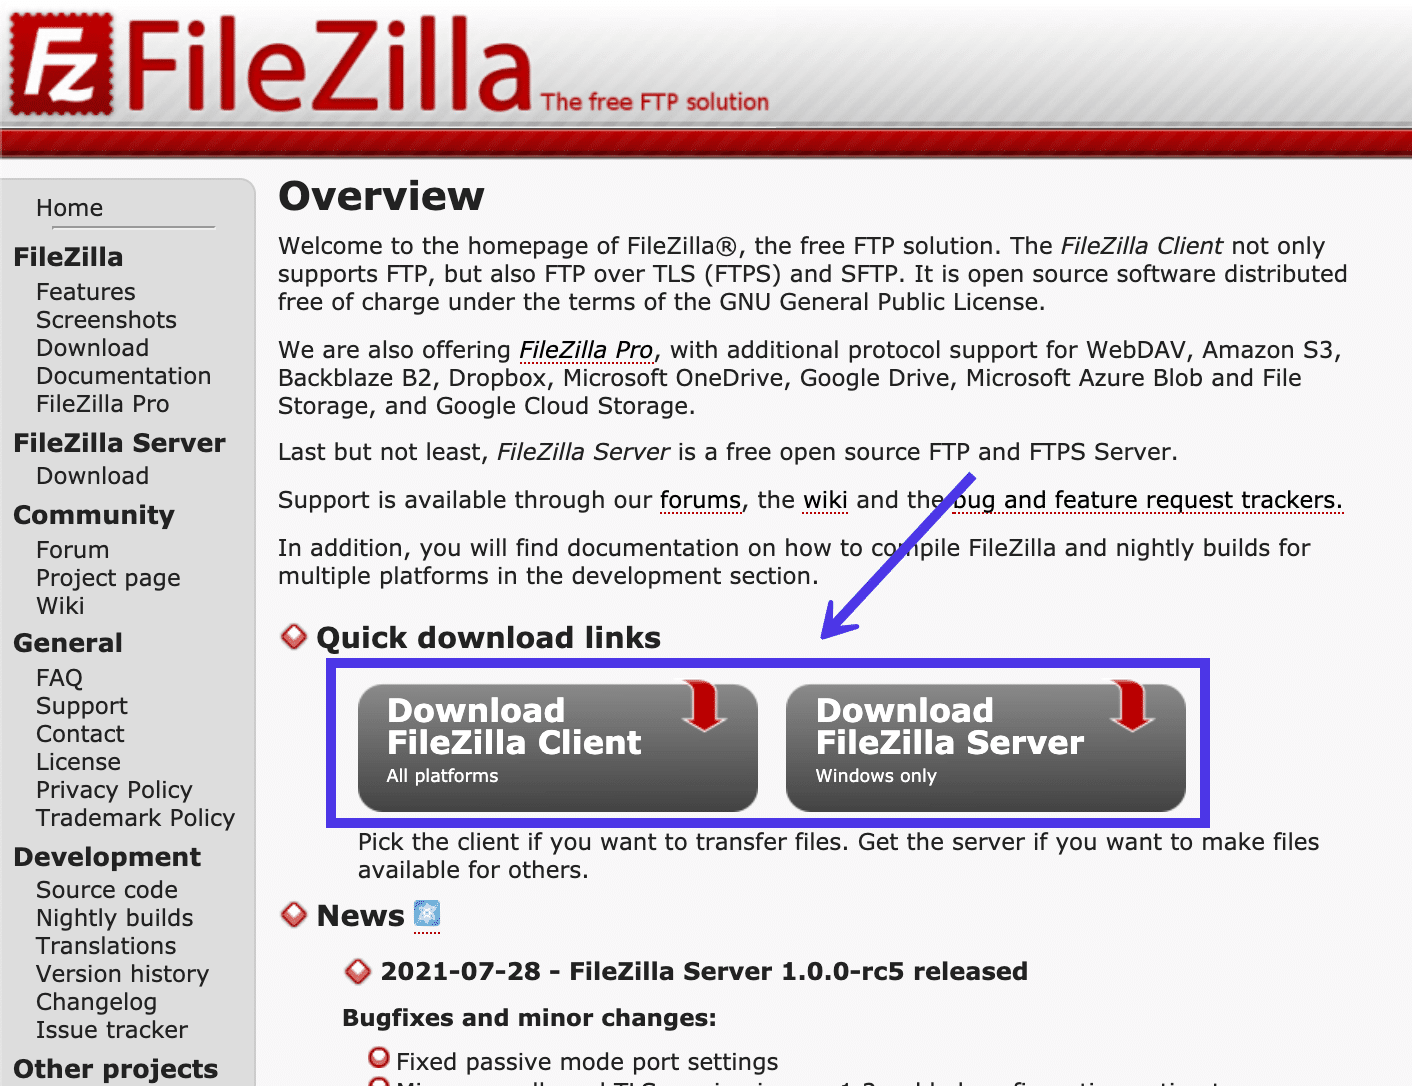 Pour lancer le processus d'installation, clique sur le bouton Télécharger FileZilla Client.